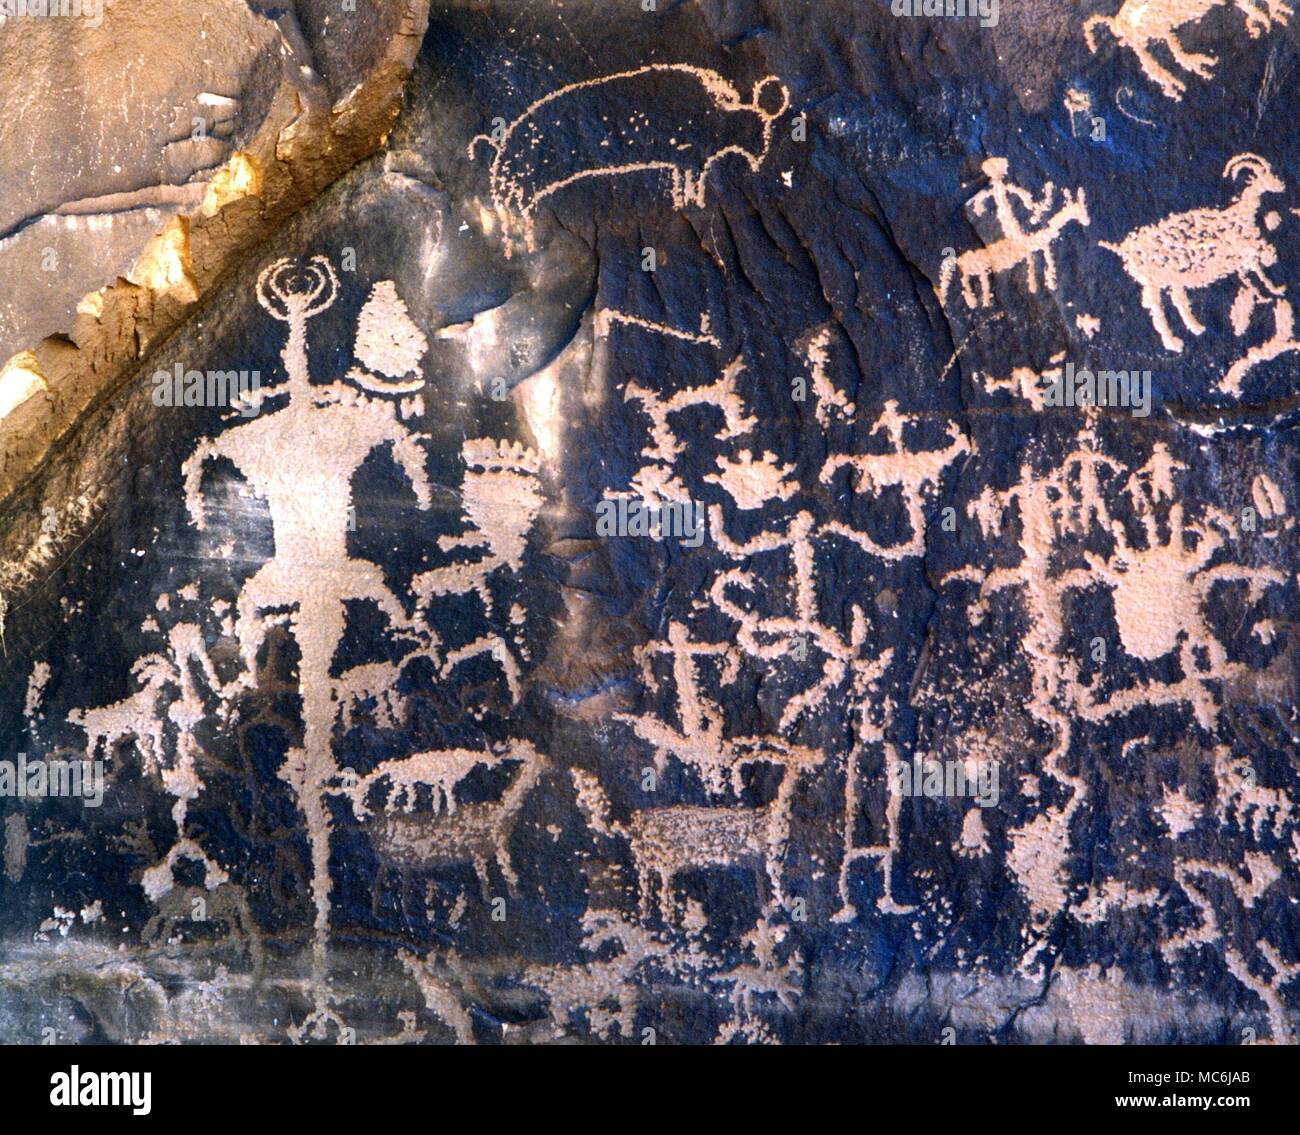 Piktogramme - Raum - Männer. Native American Piktogramme, einige mit Tier - Götter der Art sagte von Daniken raumfahrer oder Astronauten zu vertreten - siehe beispielsweise die gehörnten Abbildung auf der extremen Linken des Bildes. Piktogramme auf dem Newspaper Rock, Utah Stockfoto